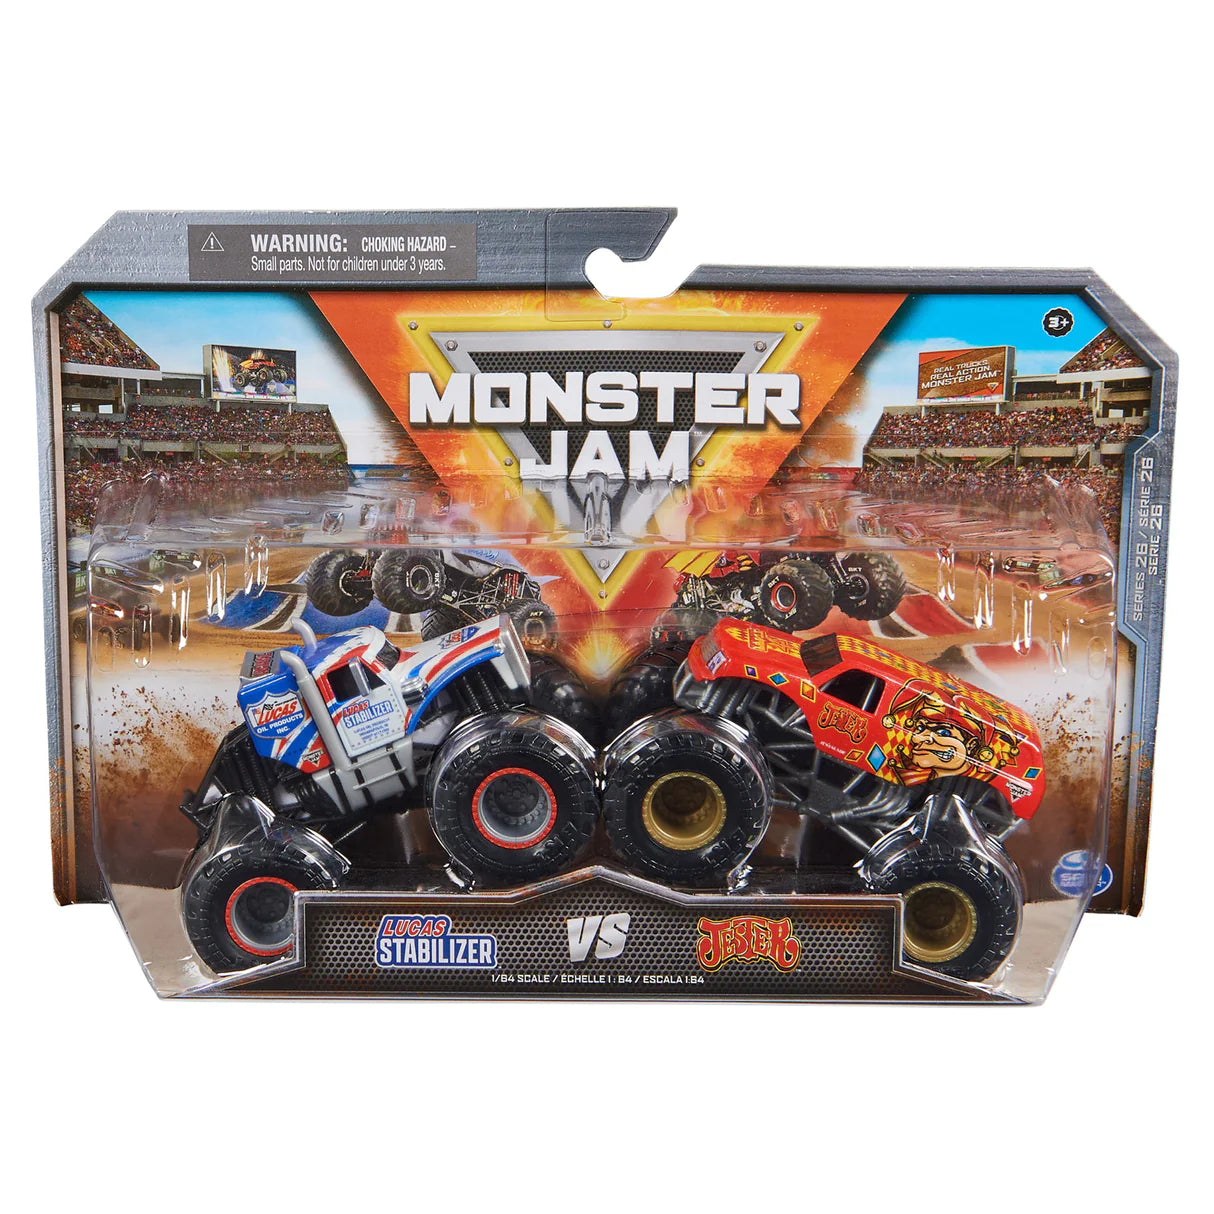 Monster Jam 1/64 2 Pack Vehicles Lucas Stabilizer VS Jester